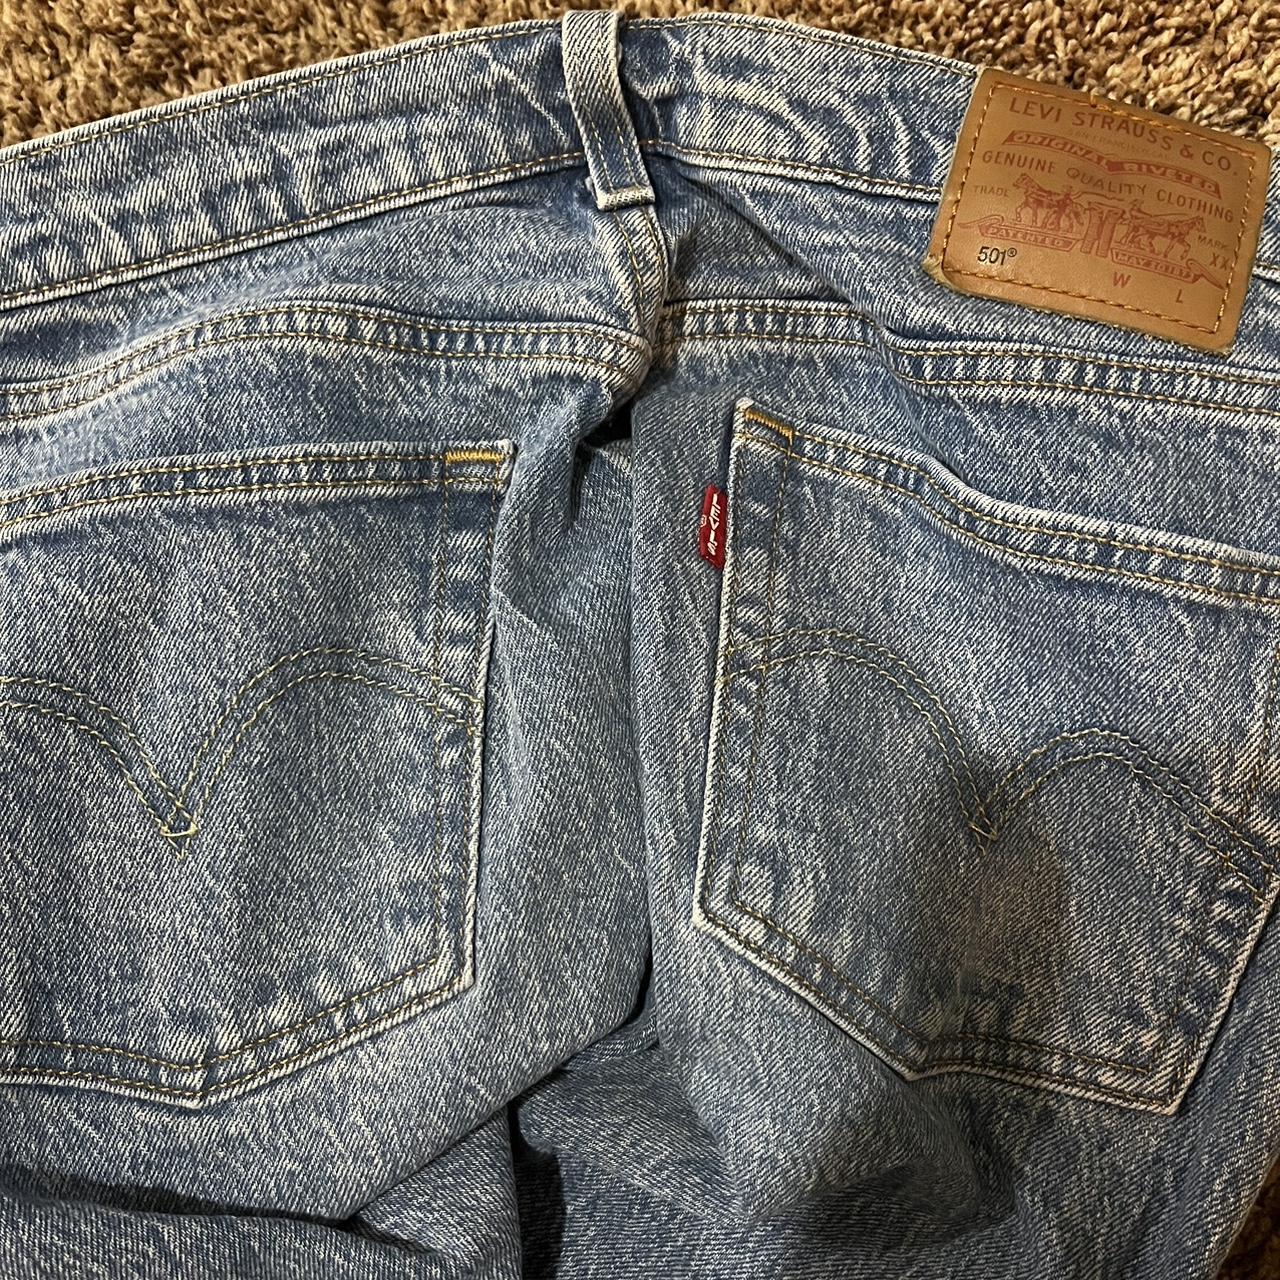 Levi’s 501 original fit women’s jeans light wash.